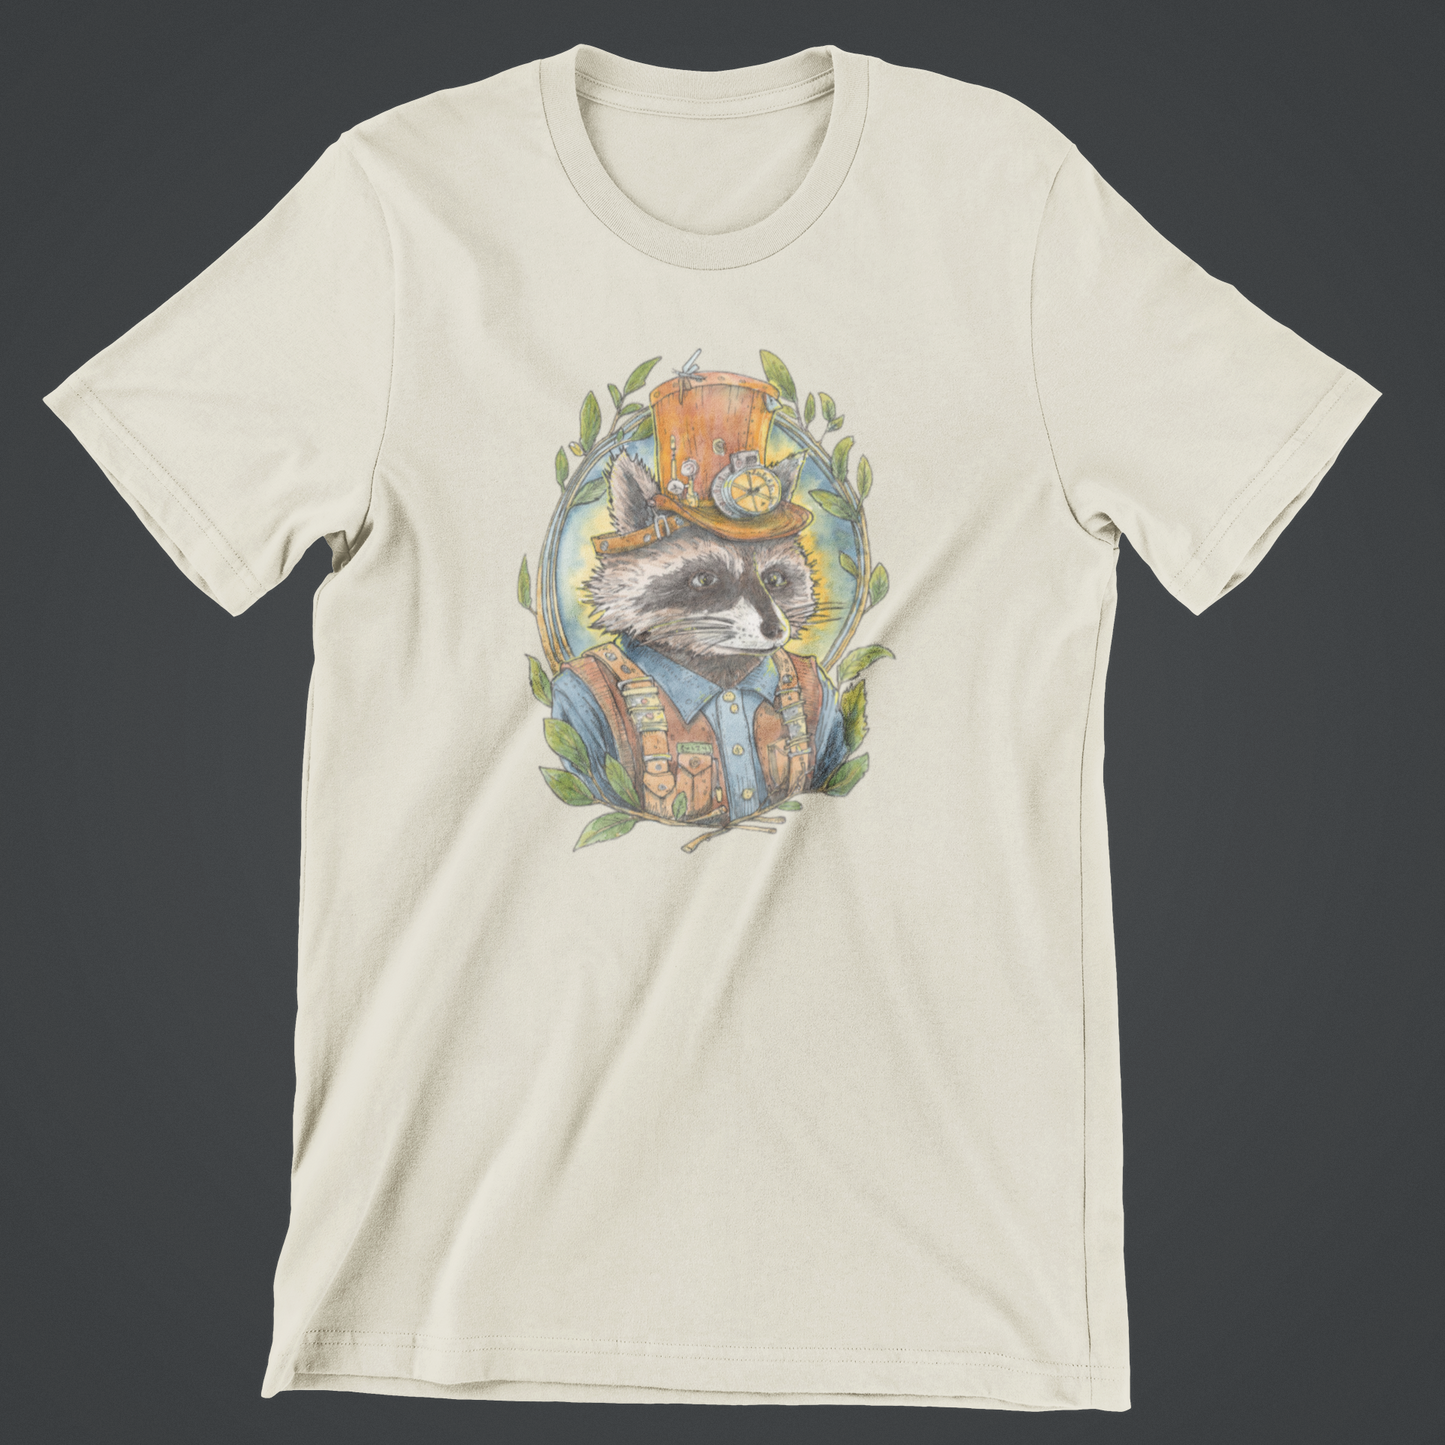 Steampunk Raccoon T-Shirt Design by Robert R Norman